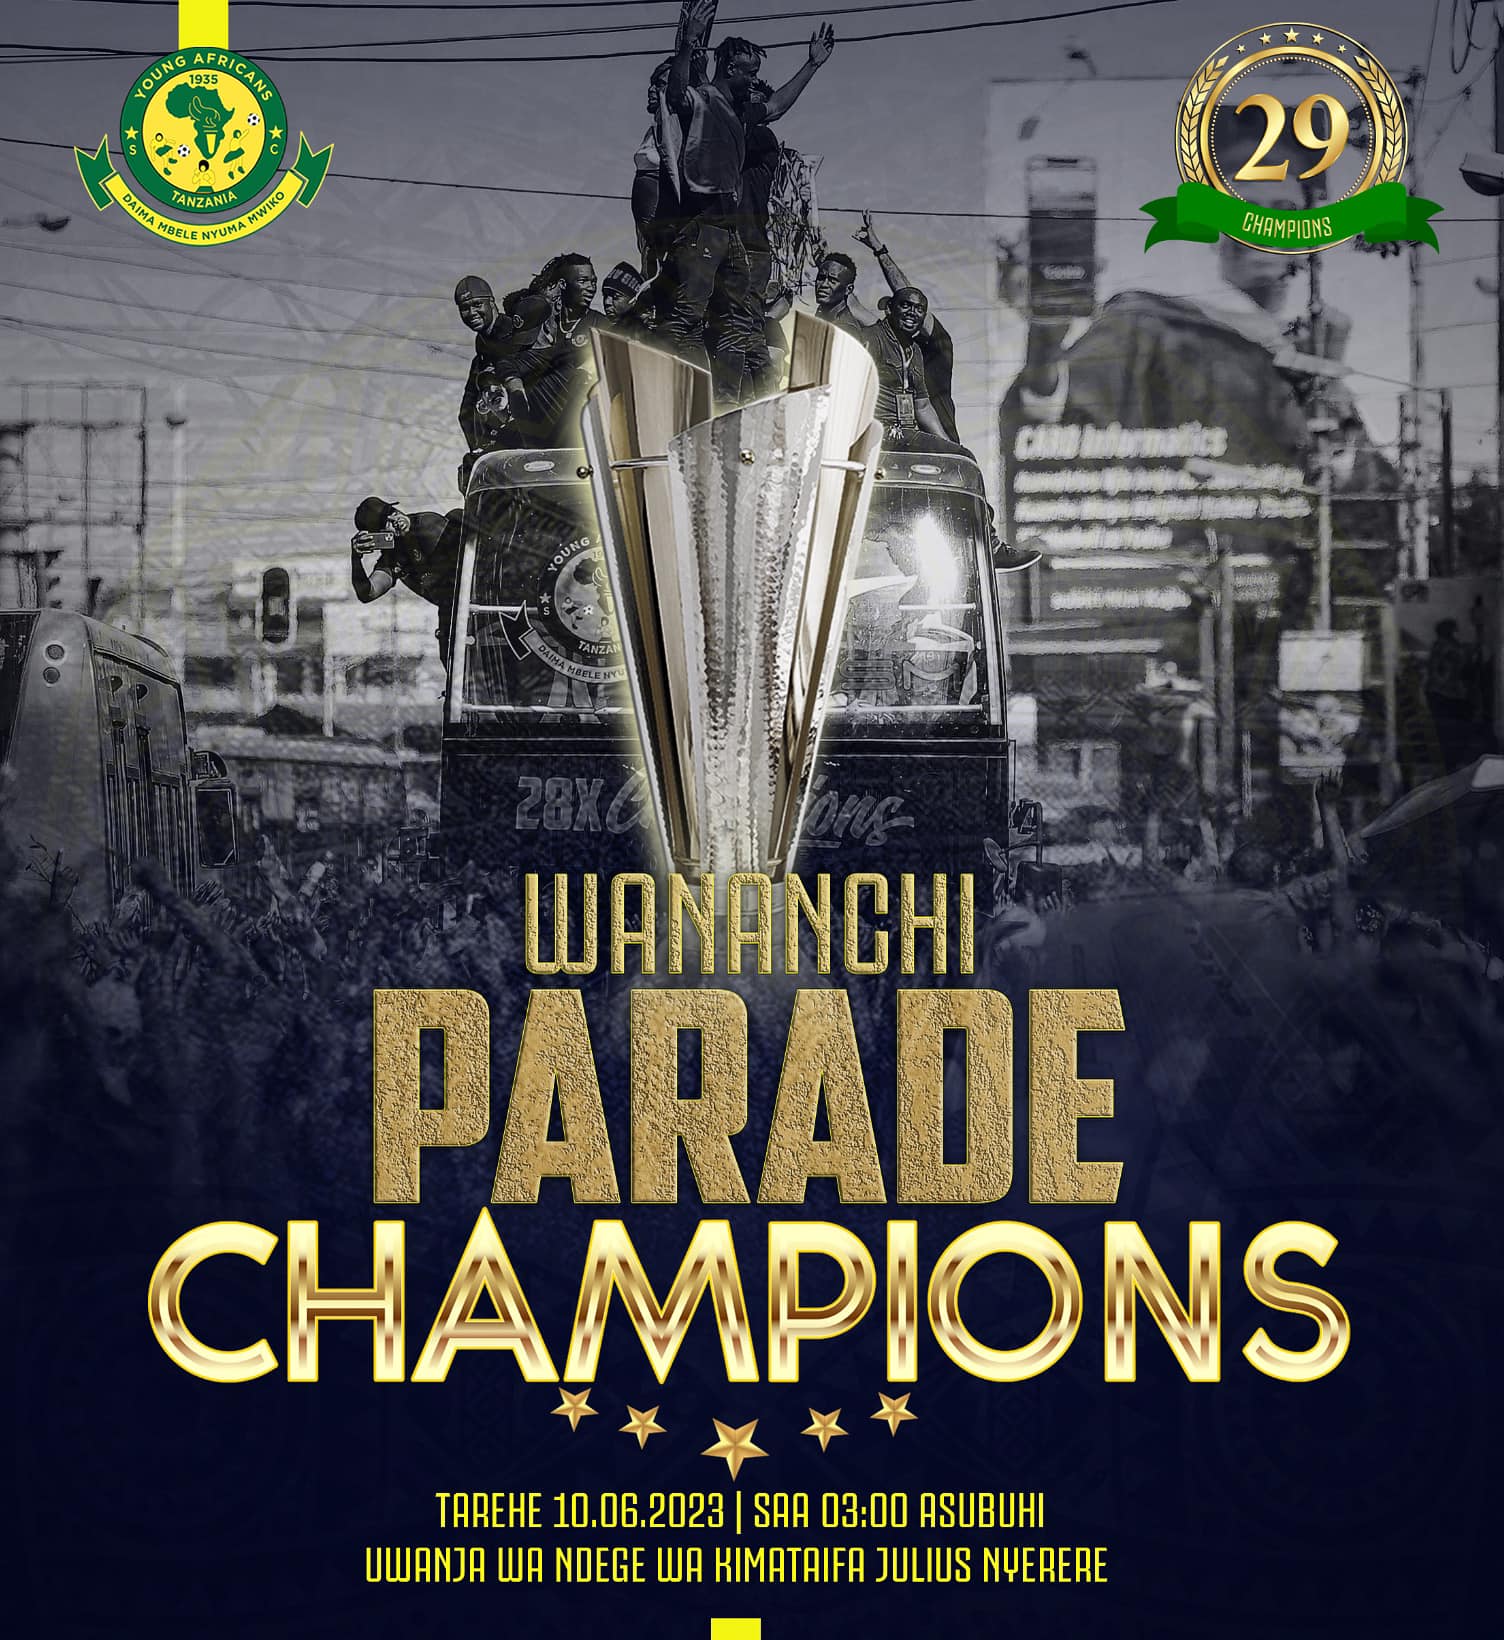 Ratiba Ya Parade ya Yanga Champions Parade